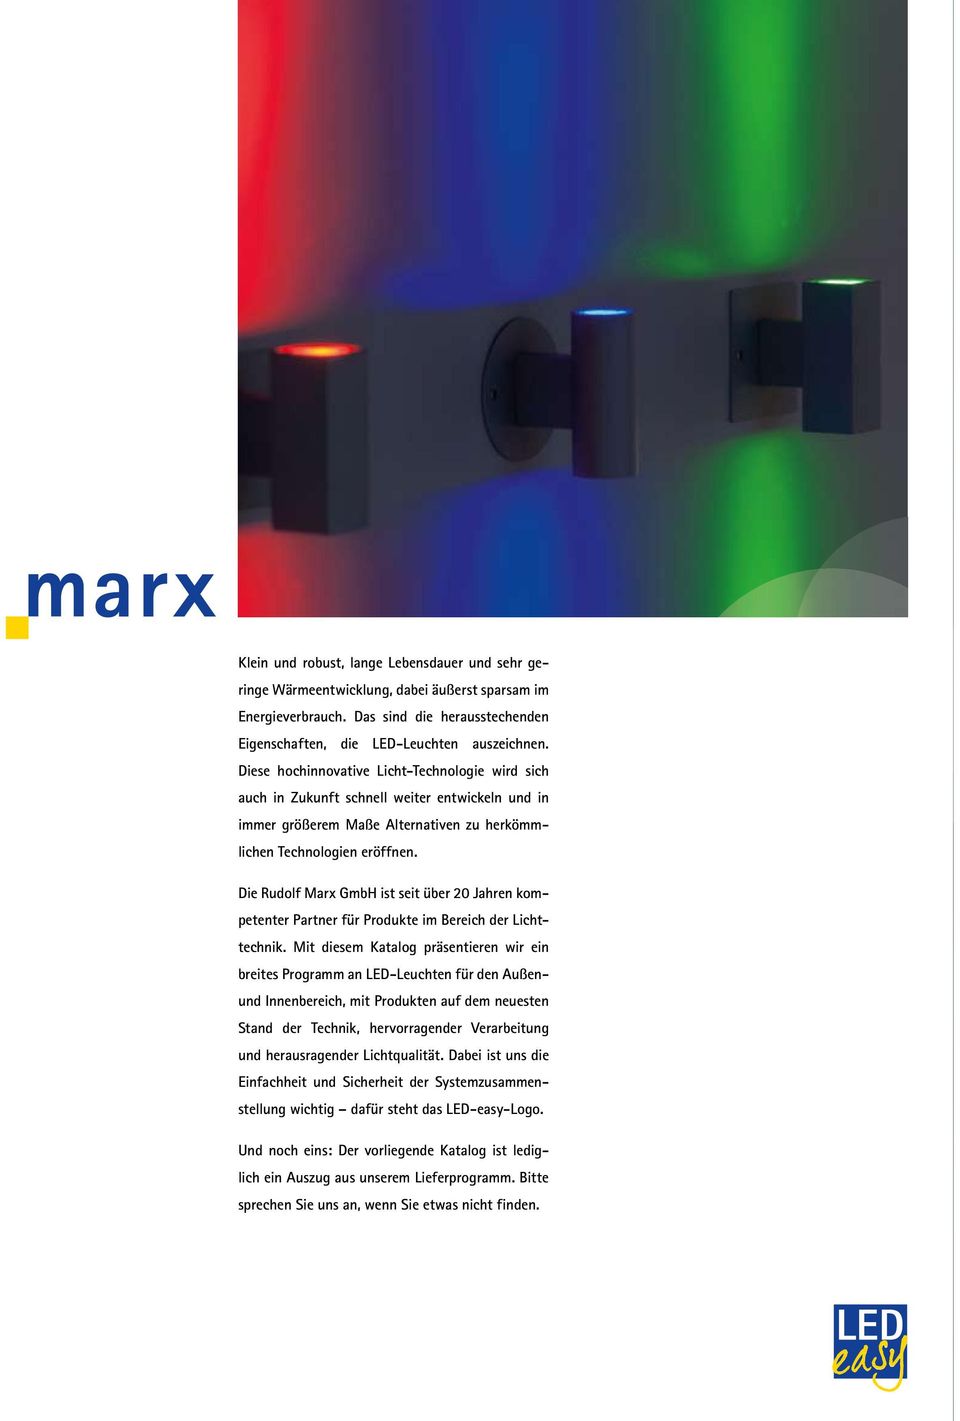 Die Rudolf Marx GmbH ist seit über 20 Jahren kompetenter Partner für Produkte im Bereich der Lichttechnik.